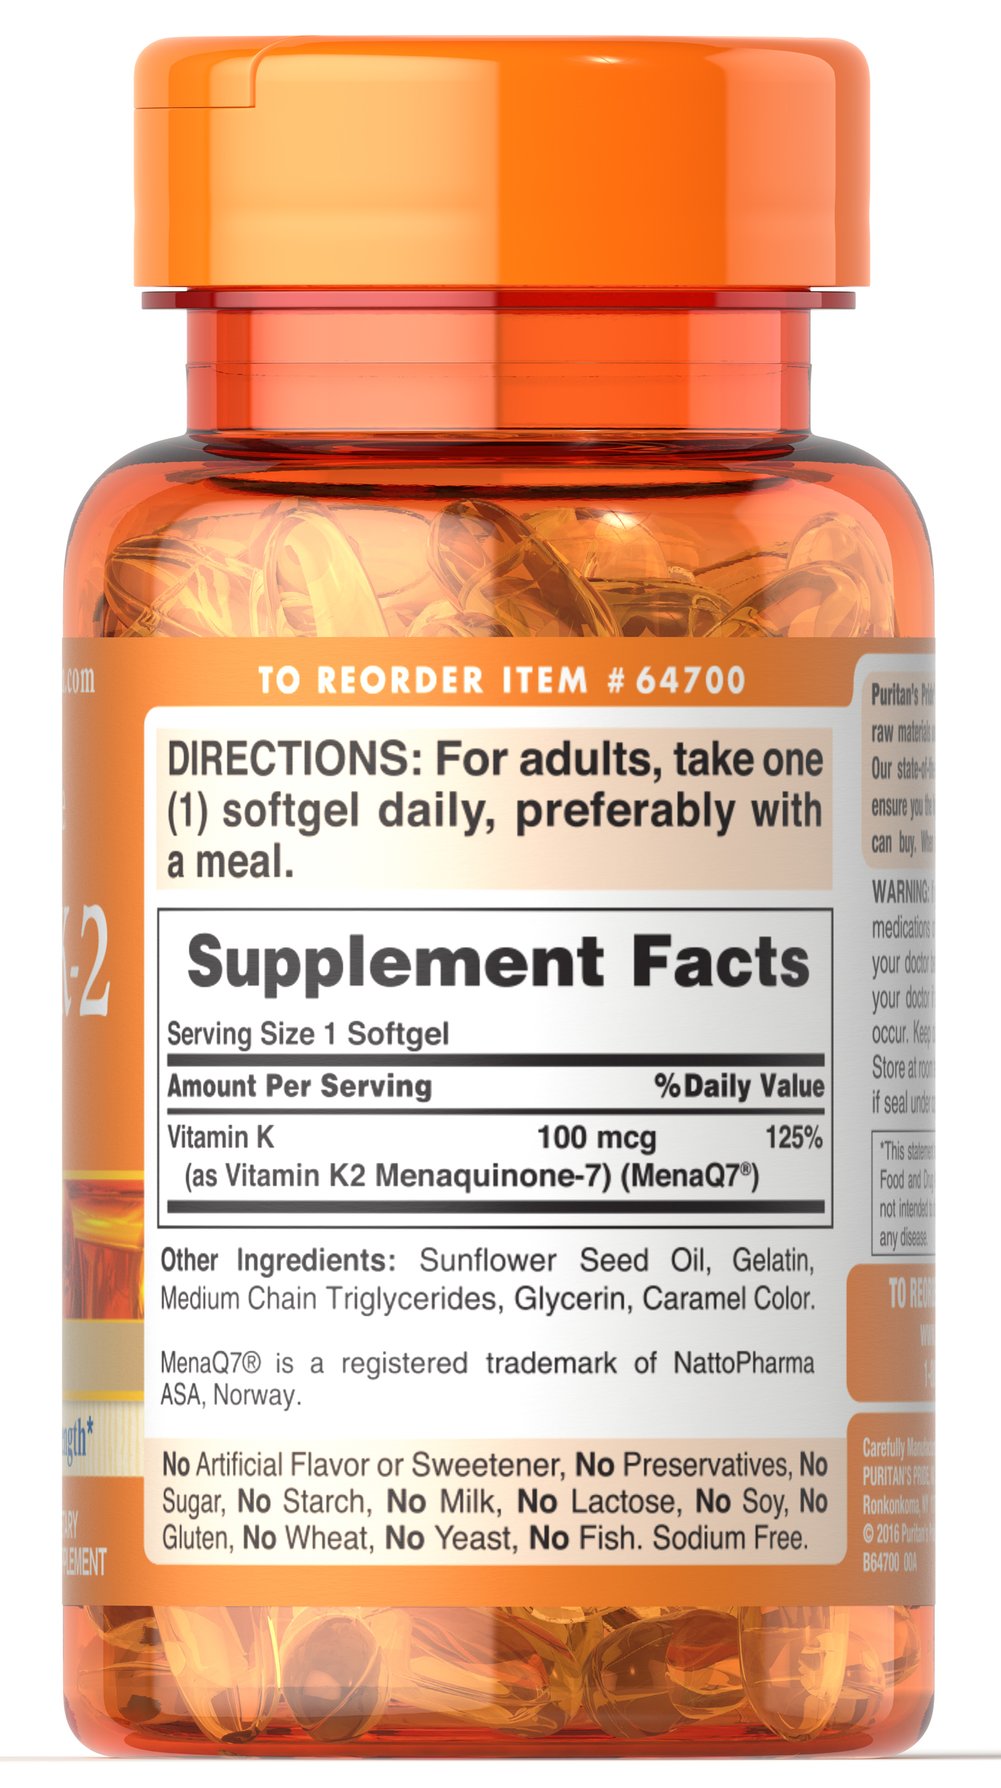 Vitamin K-2 (MenaQ7) 100 mcg